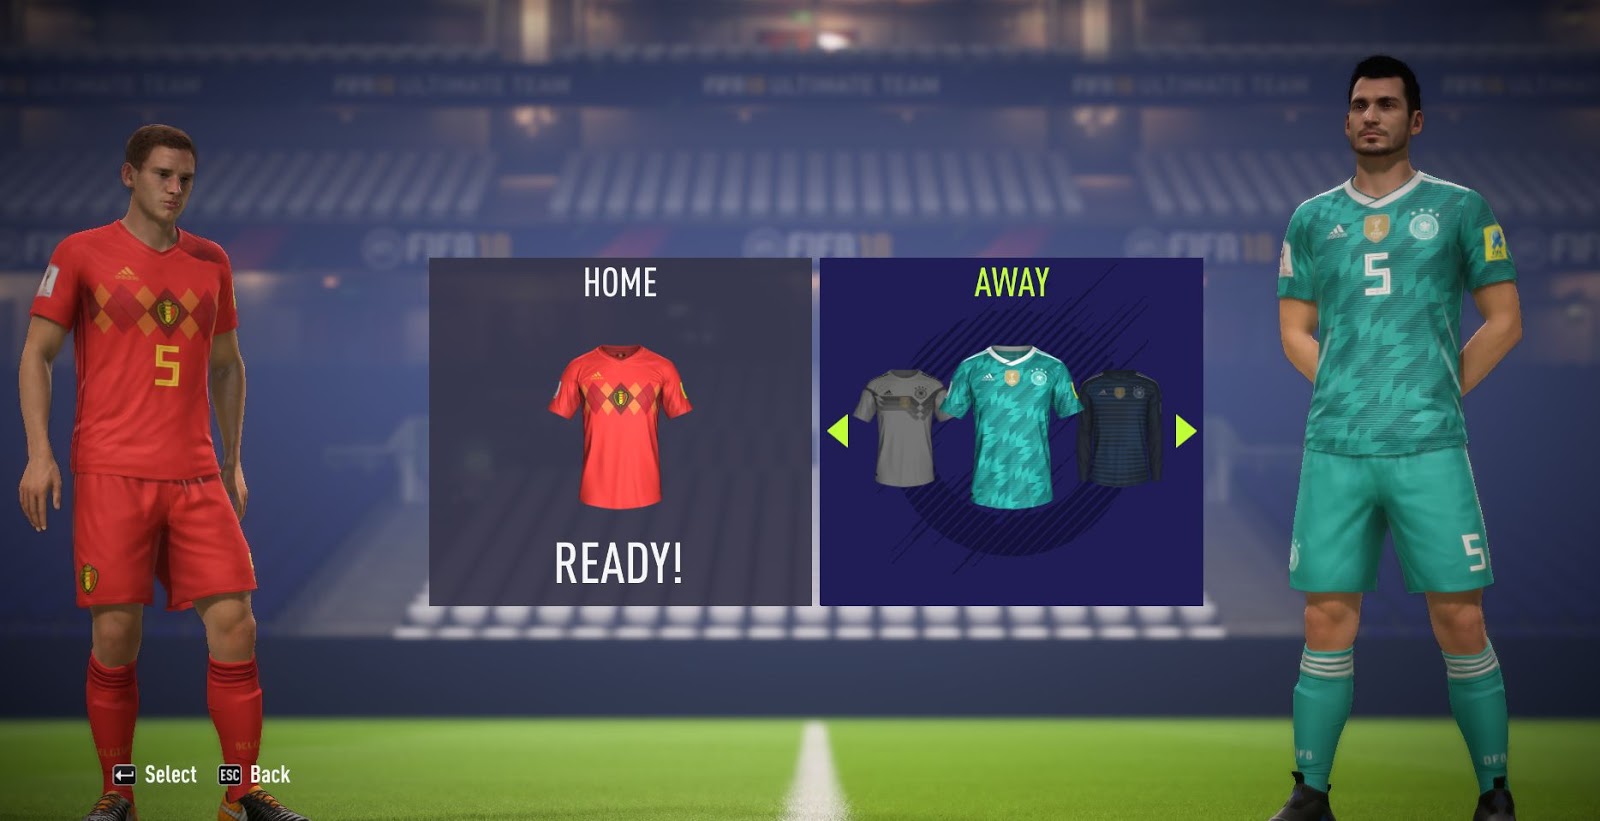 PES 2018/2017 Kit Logo Pack V1.0 (FIFA18 Style) - Pro Evolution Soccer 2018  at ModdingWay